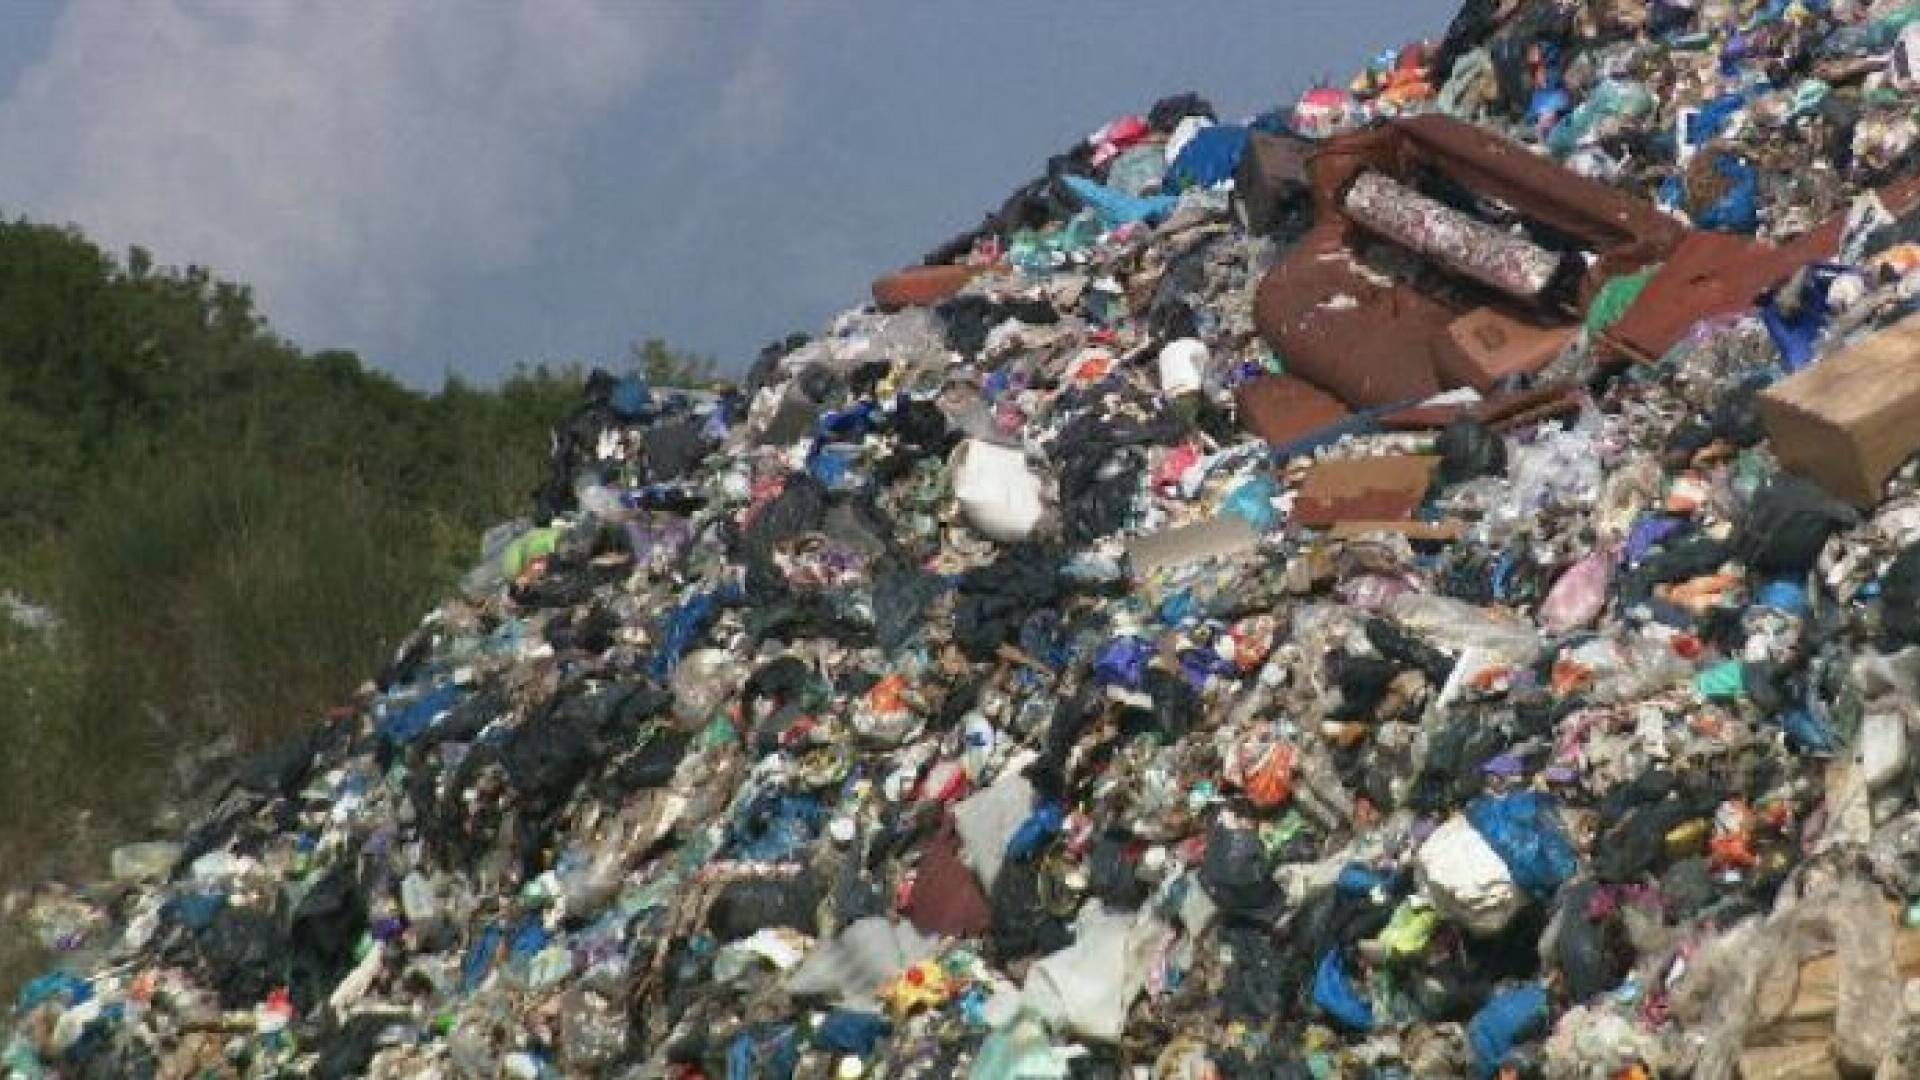 Stotine tisuća eura bačeno u smeće: O razdvajanju otpada ne razmišljaju, ali ih ljute kazne koje plaćaju